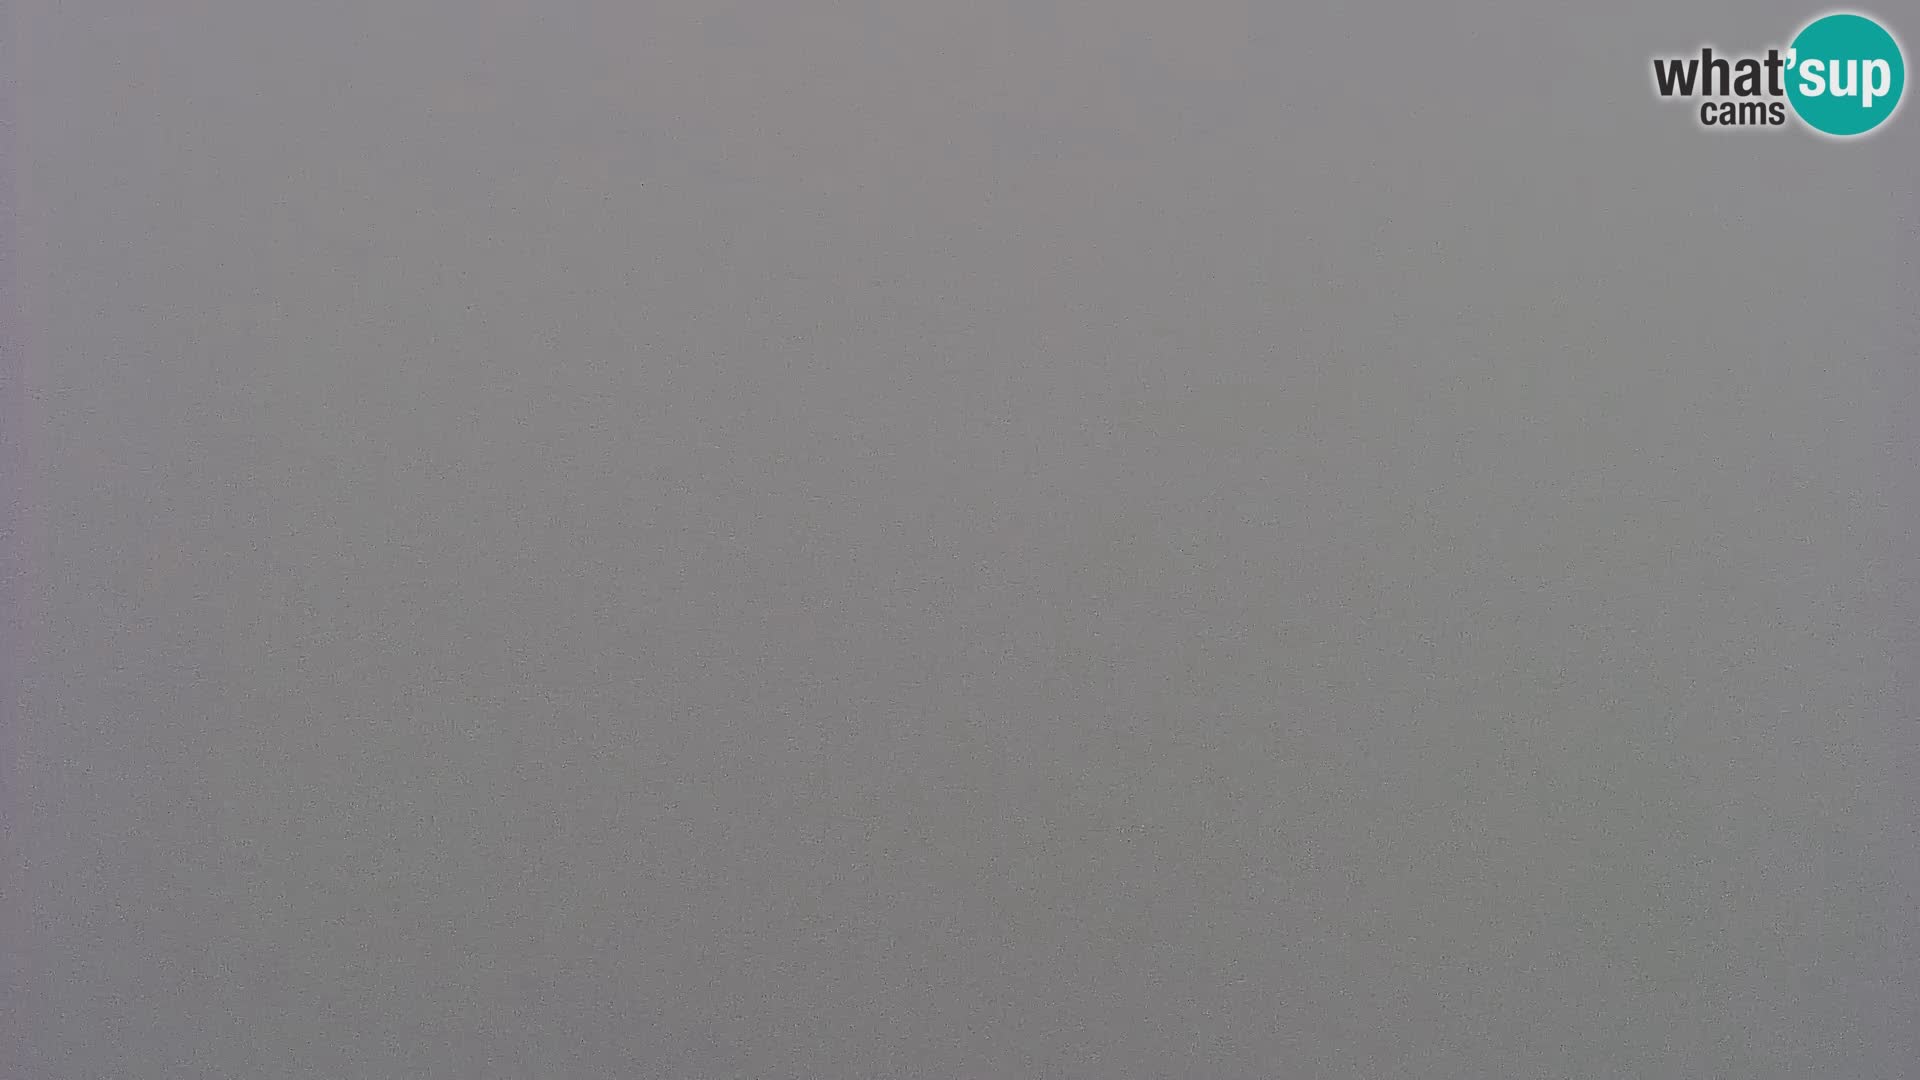 Web kamera Bohinjsko jezero i Triglav – pogled sa skijališta Vogel